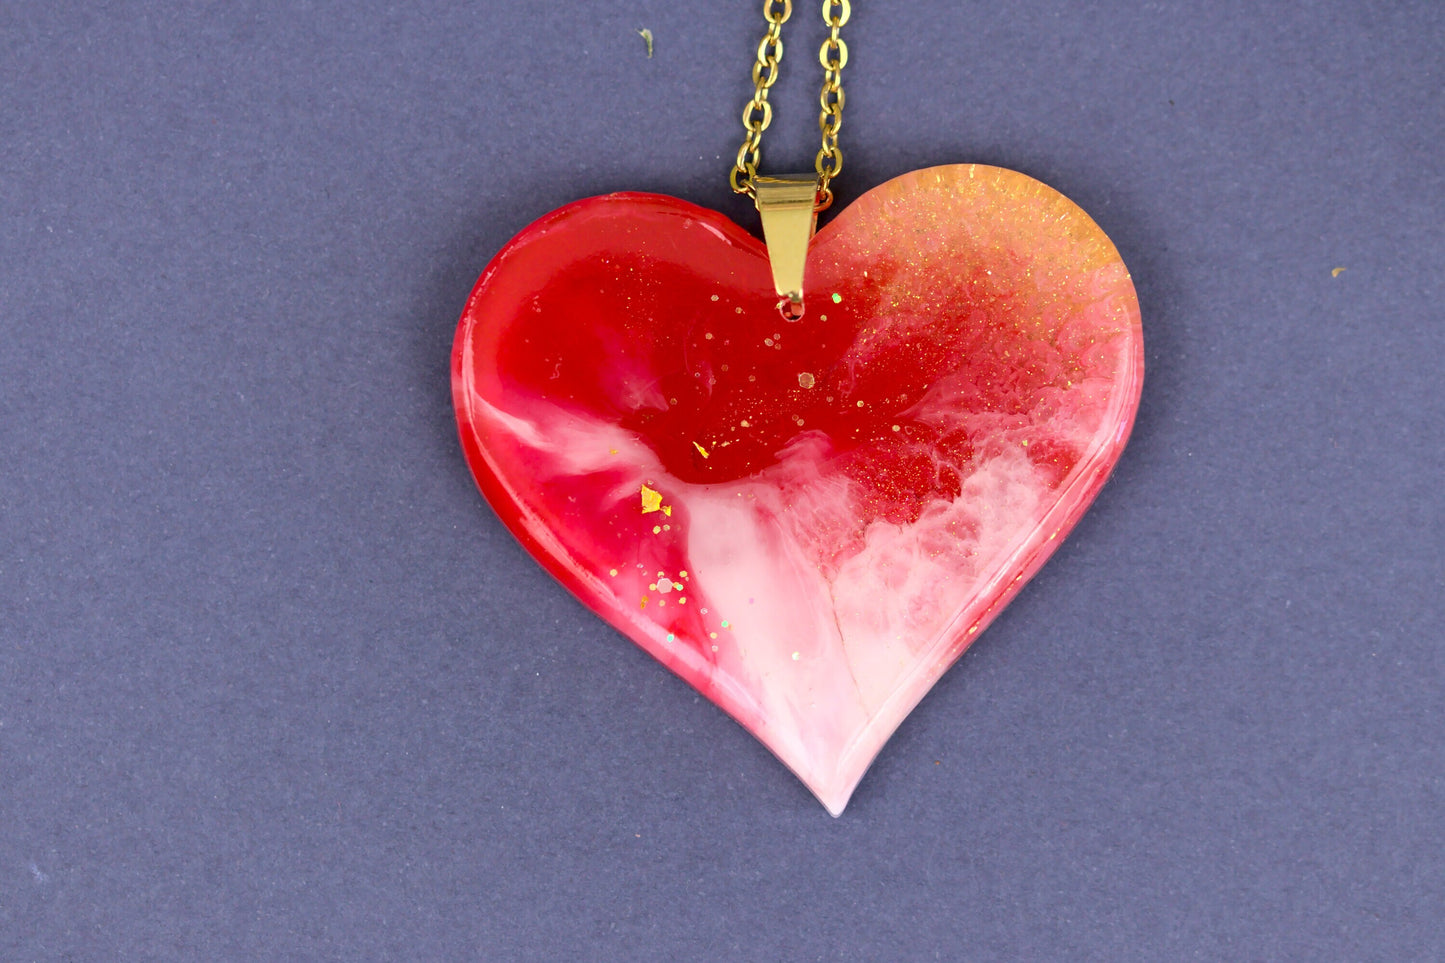 Colier Mare - Inima - Inox -  Rosu cu Auriu - Handmade  (Colecția Universe of Celestia)